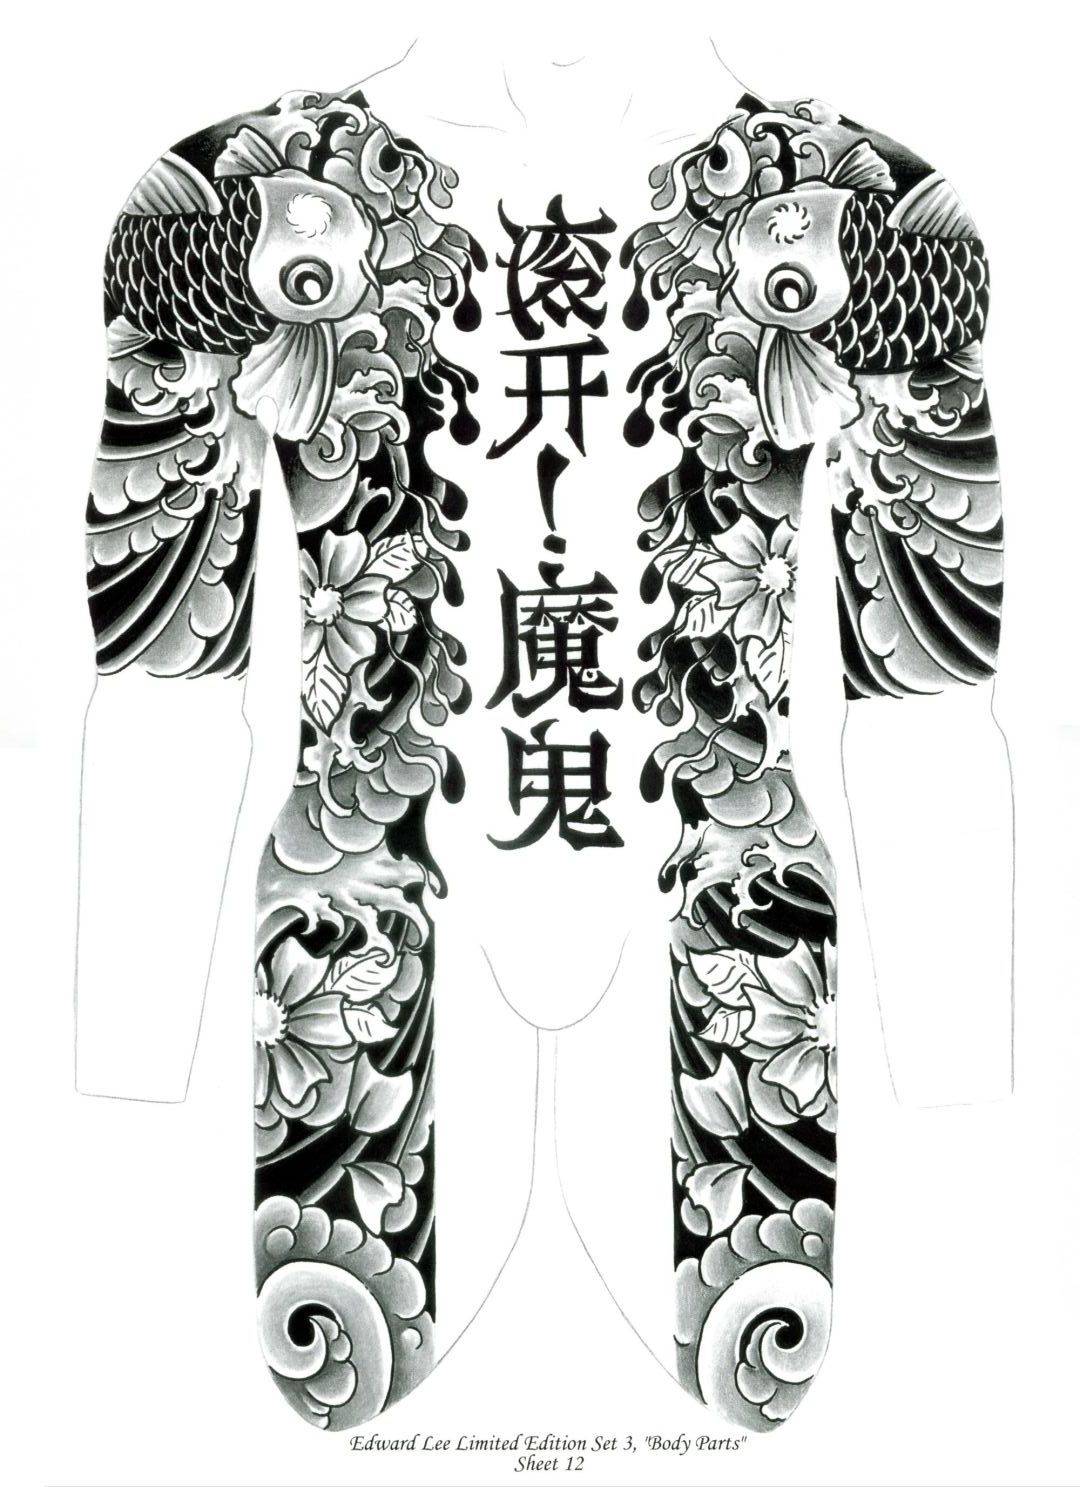 Тату в японском стиле. эскизы на руке, рукав, ноге, спине: дракон, карп, тигр, змея, рыбы, самурай, цветы, лиса, маска, феникс. фото